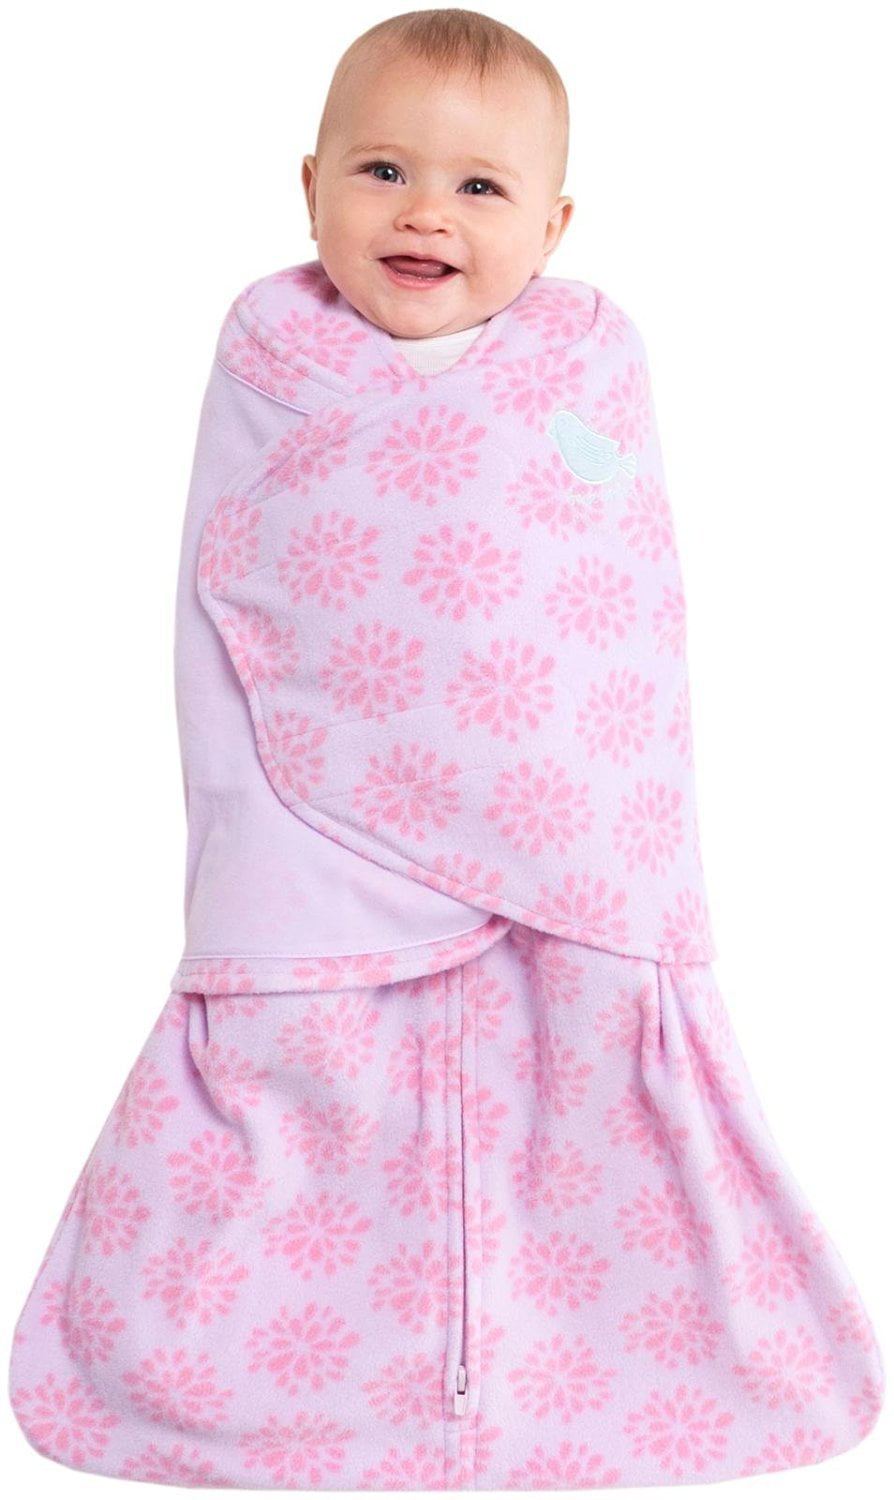 HALO SleepSack Micro-Fleece Swaddle Soft Pink Small